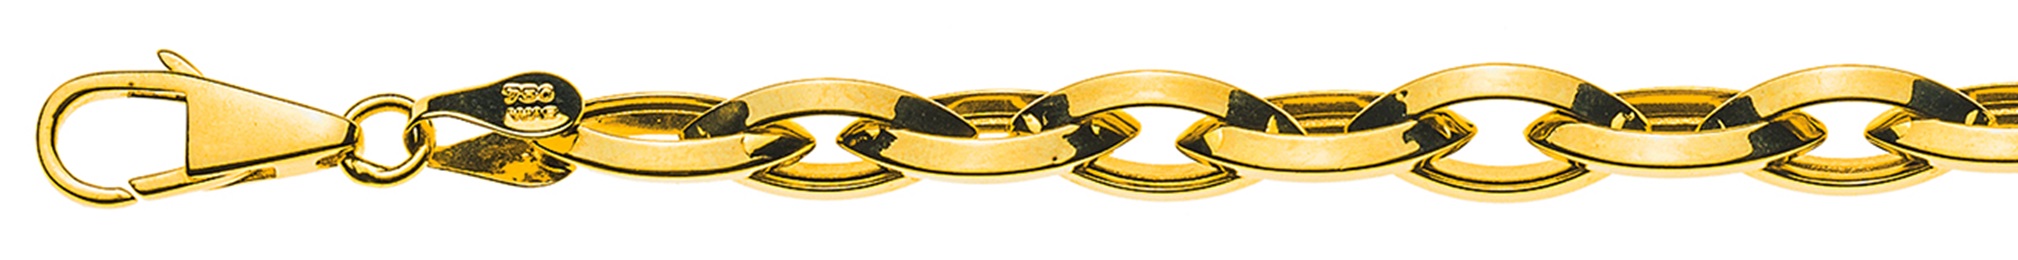 AURONOS Prestige Halskette Gelbgold 18K Navettekette Halbmassiv Messerschliff 50cm 6.6mm